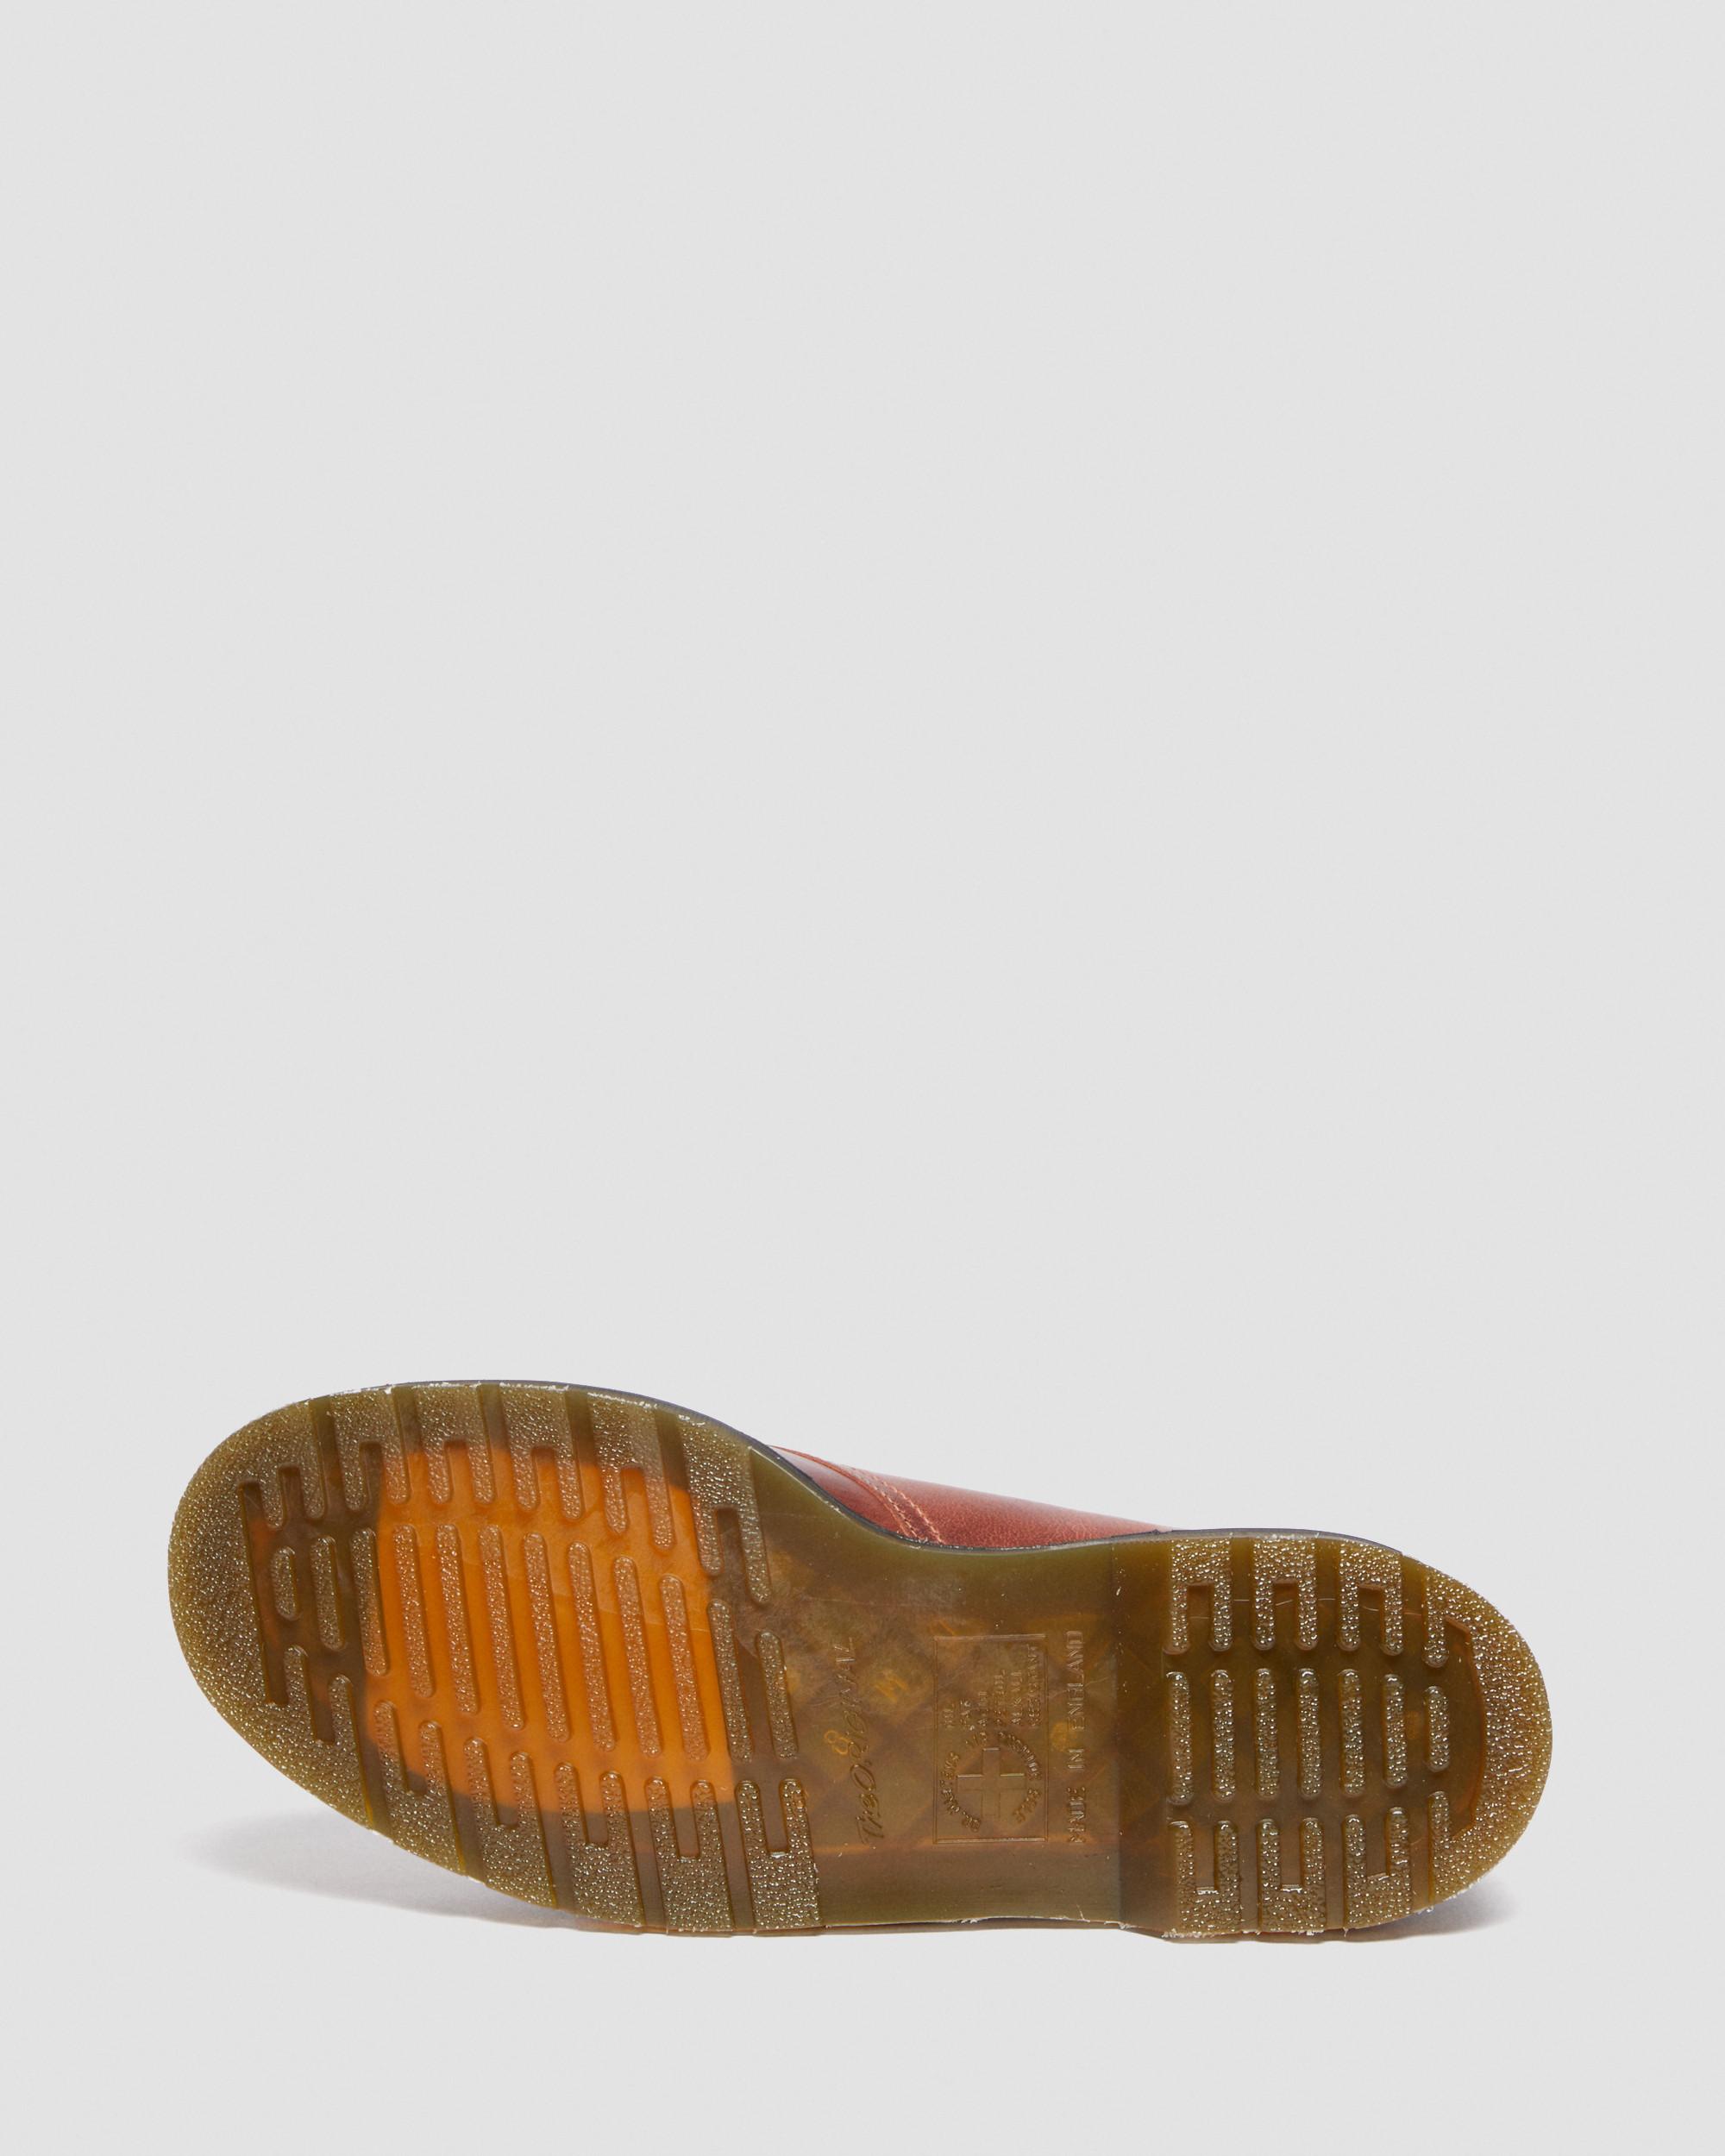 1461 Denver Veg Tan Leather Shoes